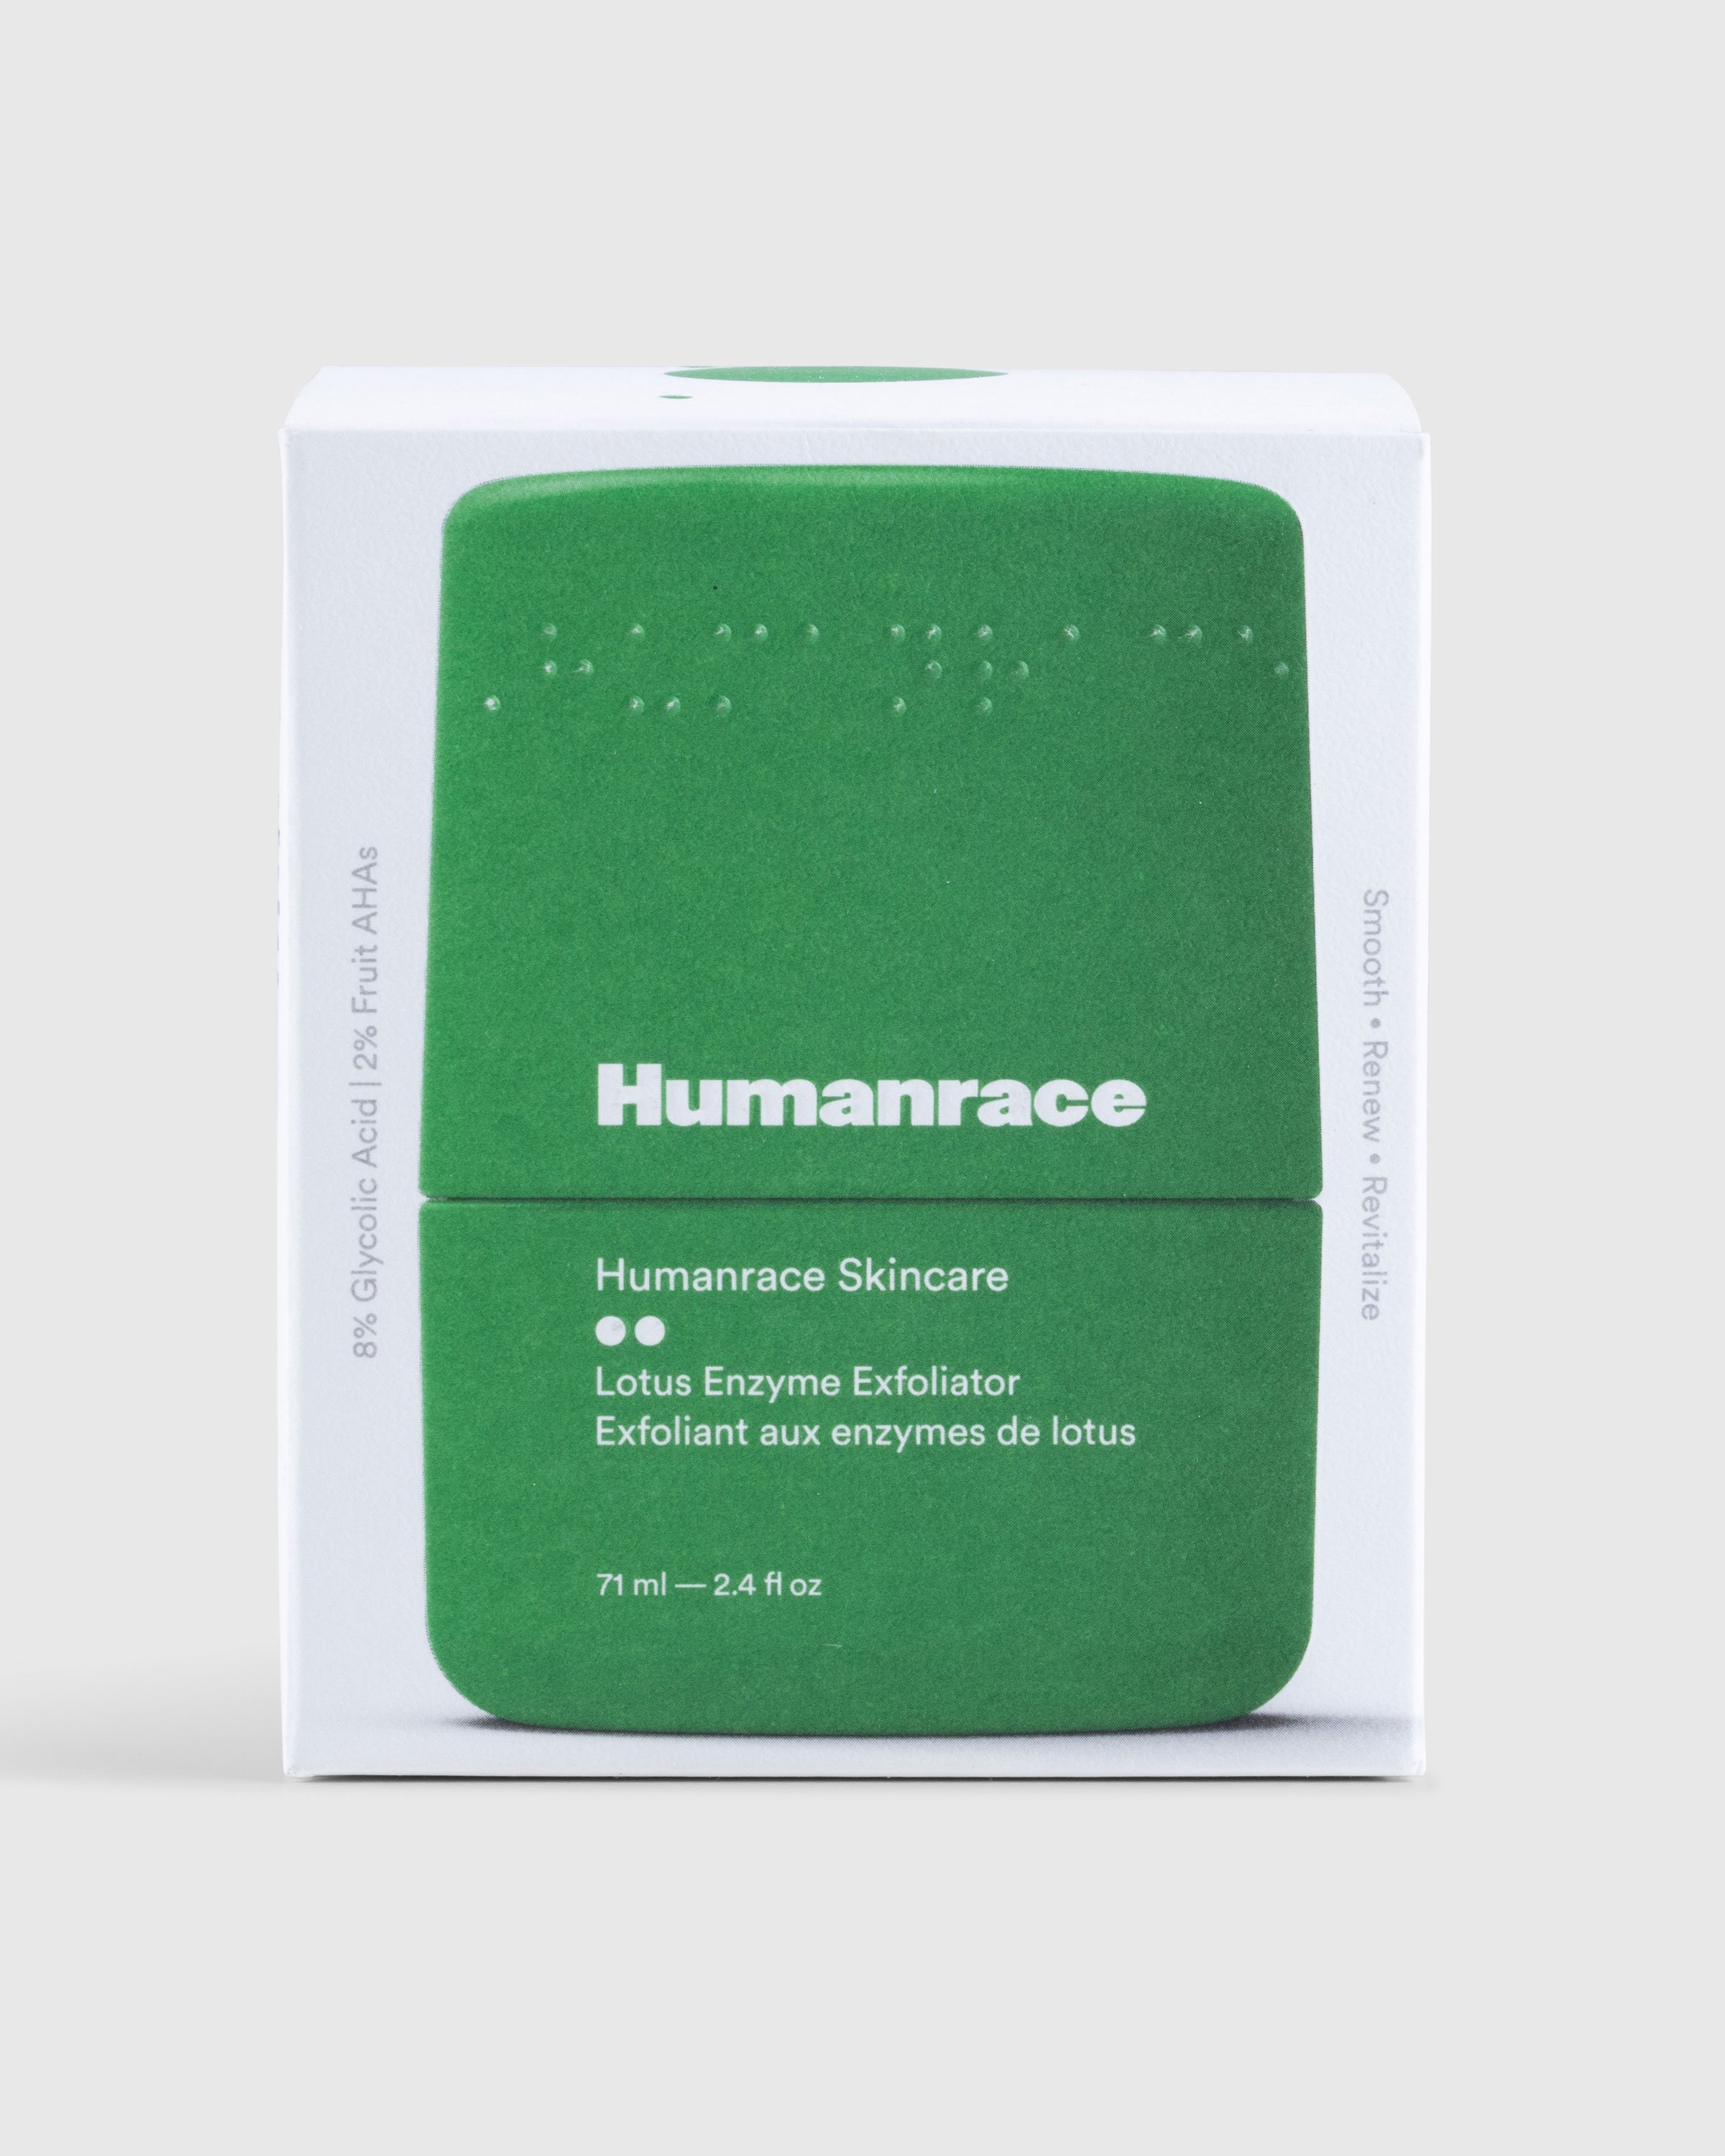 Humanrace - Lotus Enzyme Exfoliator - Lifestyle - Green - Image 2